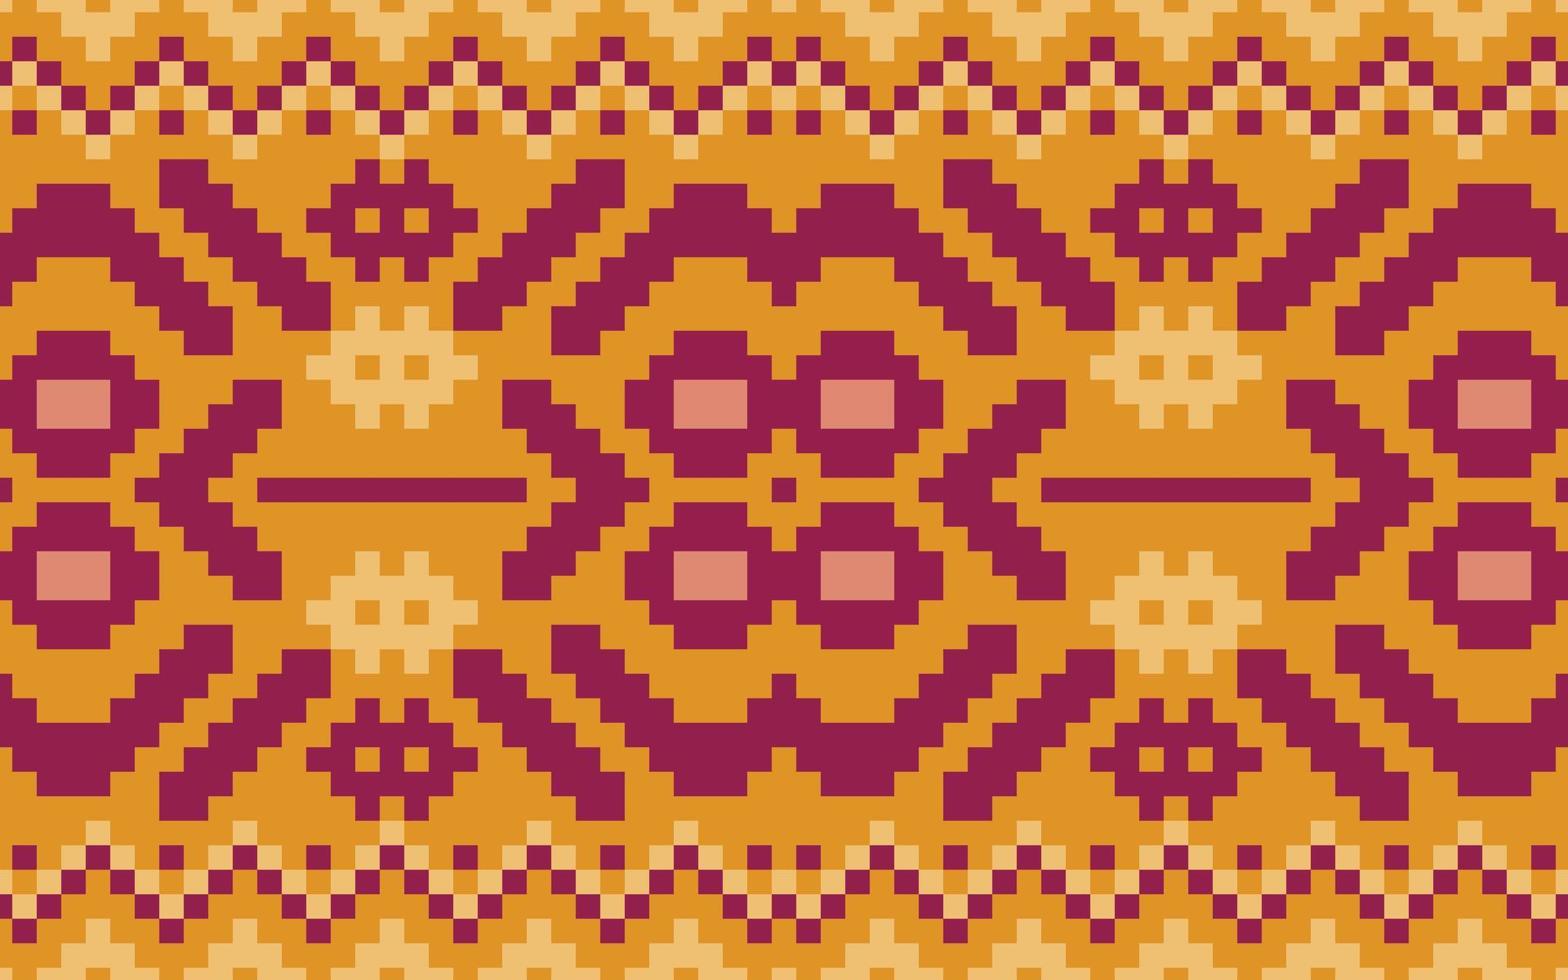 traditionnel africain ameafricanrica ethnique géométrique homogène aztèque modèle conception tissu tapis chevron textile ornement décoratif papier peint turc boho tribal broderie fond vecteur